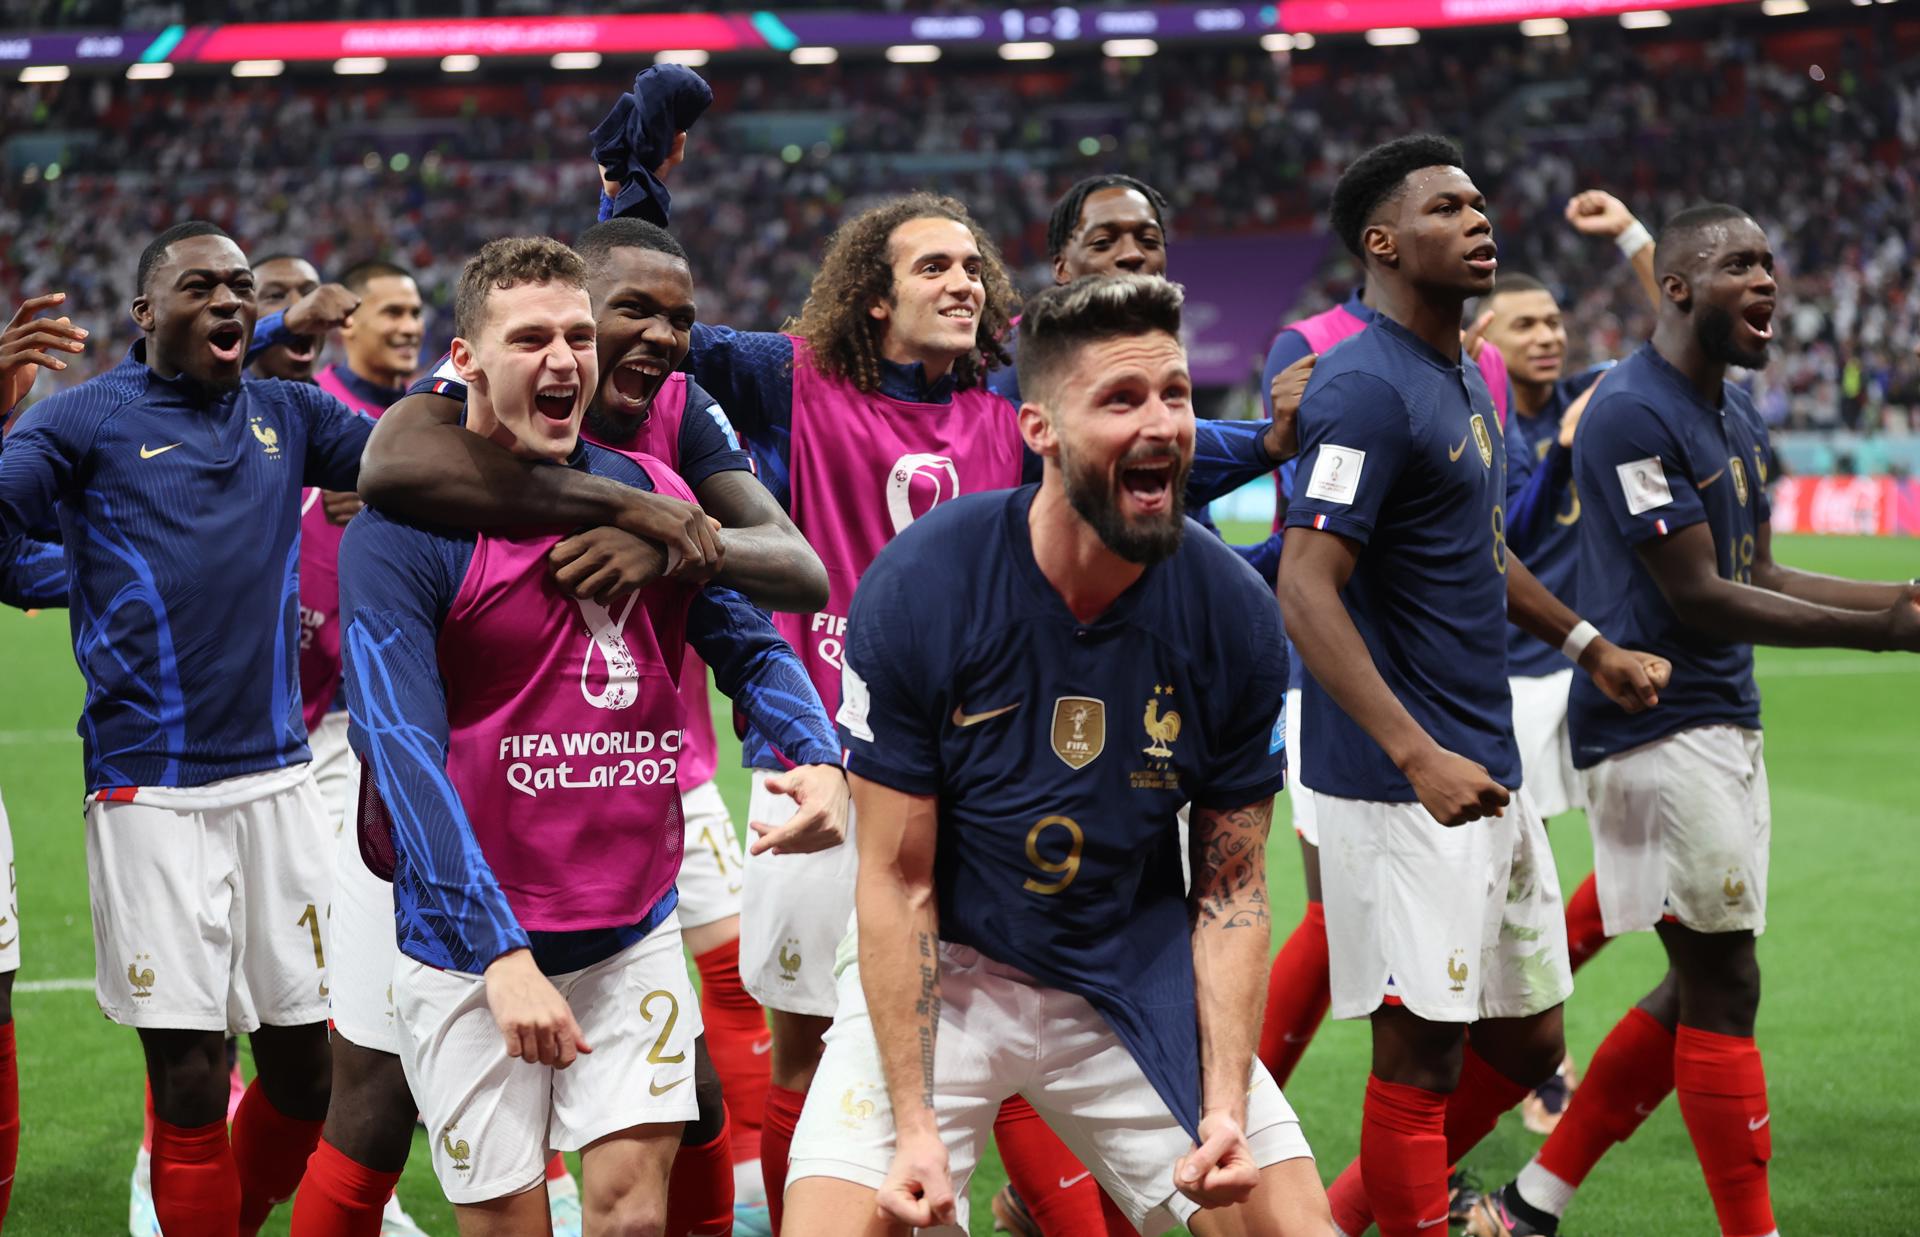 Jugadores de Francia celebran tras superar a Inglaterra y enfrentarán a Marruecos. Foto: Agencia EFE